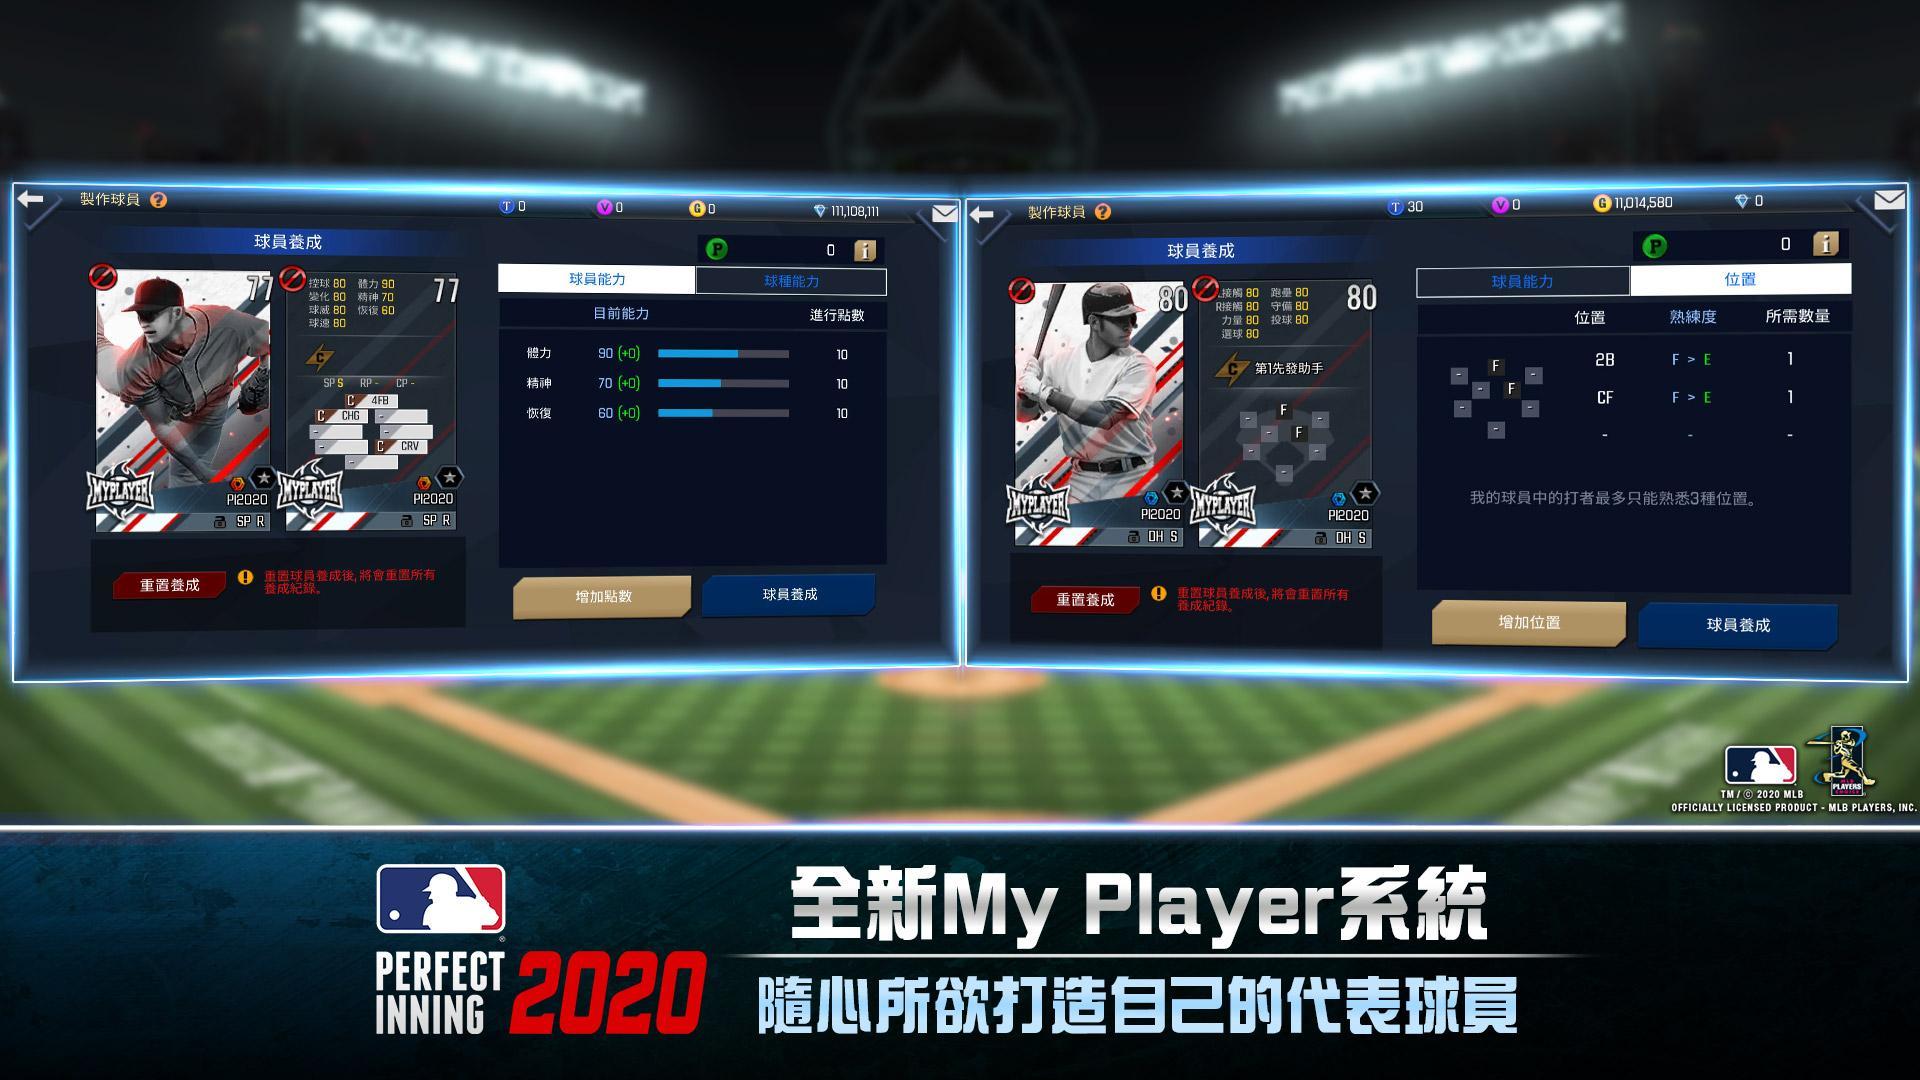 Screenshot of MLB Perfect Inning 2021